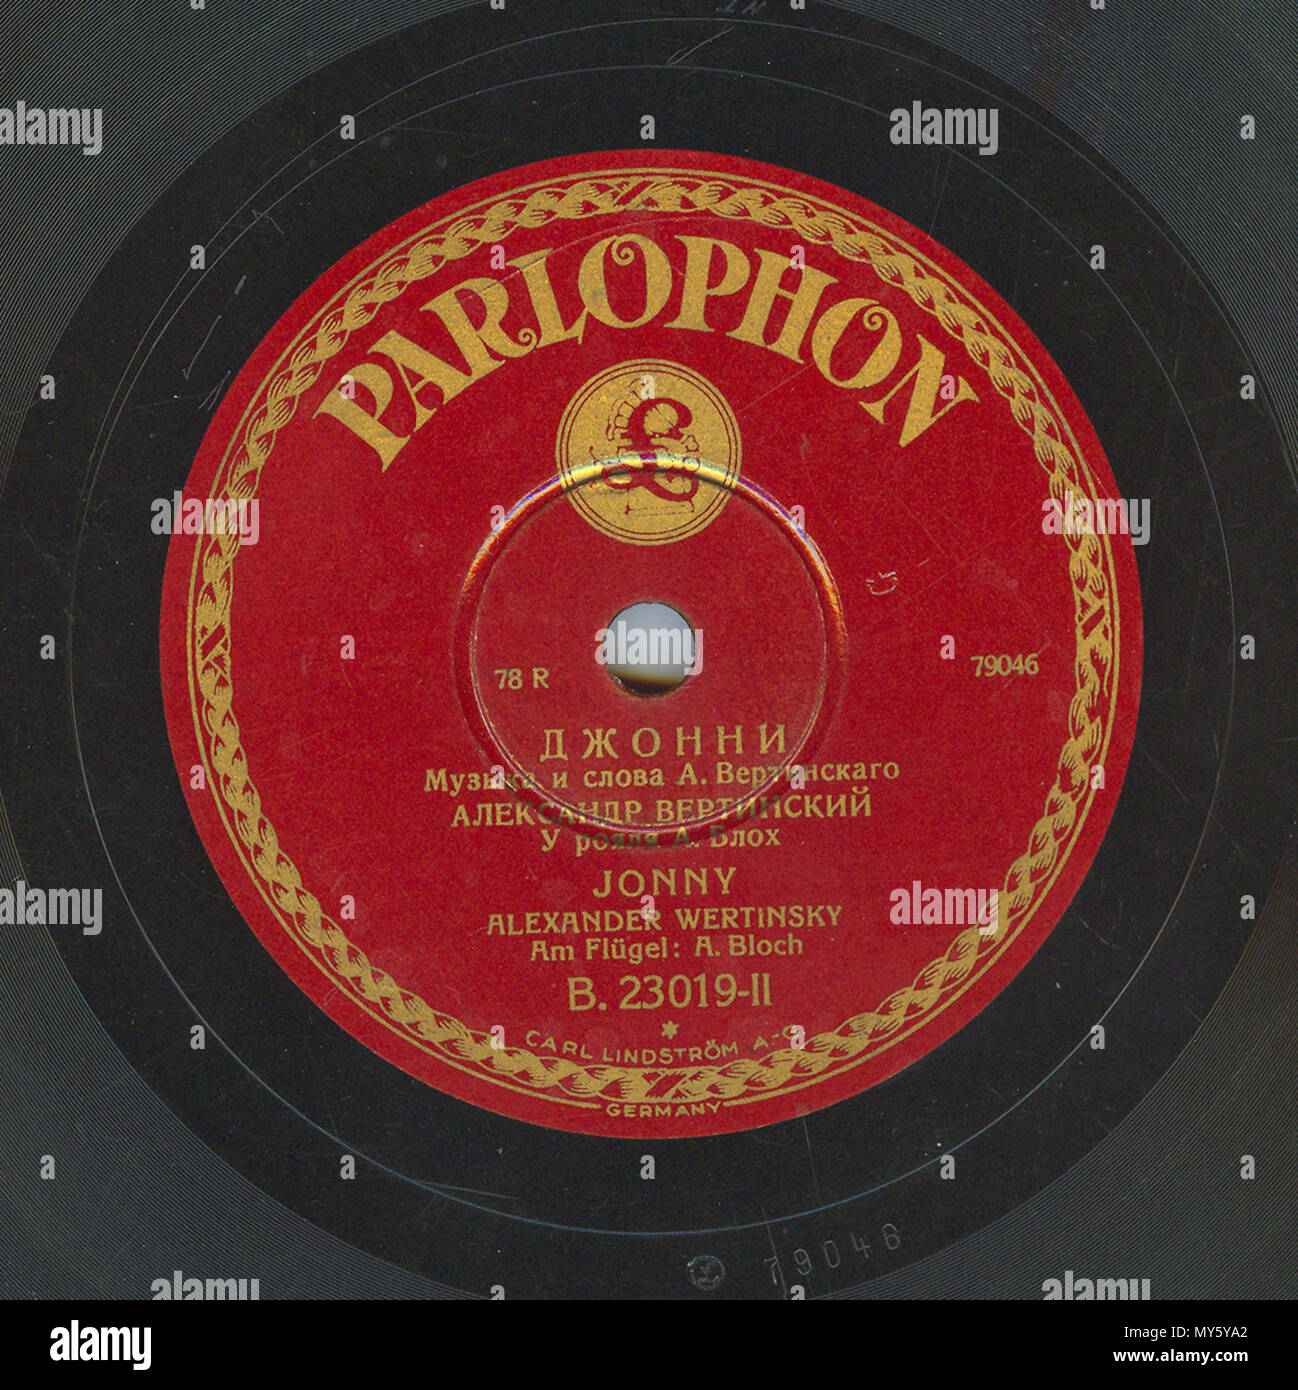 . Englisch: Vertinsky Parlophone B. 23019 02. 6. April 2010, 12:01:55. Parlophone 548 Vertinsky Parlophone B. 23019, 02. Stockfoto